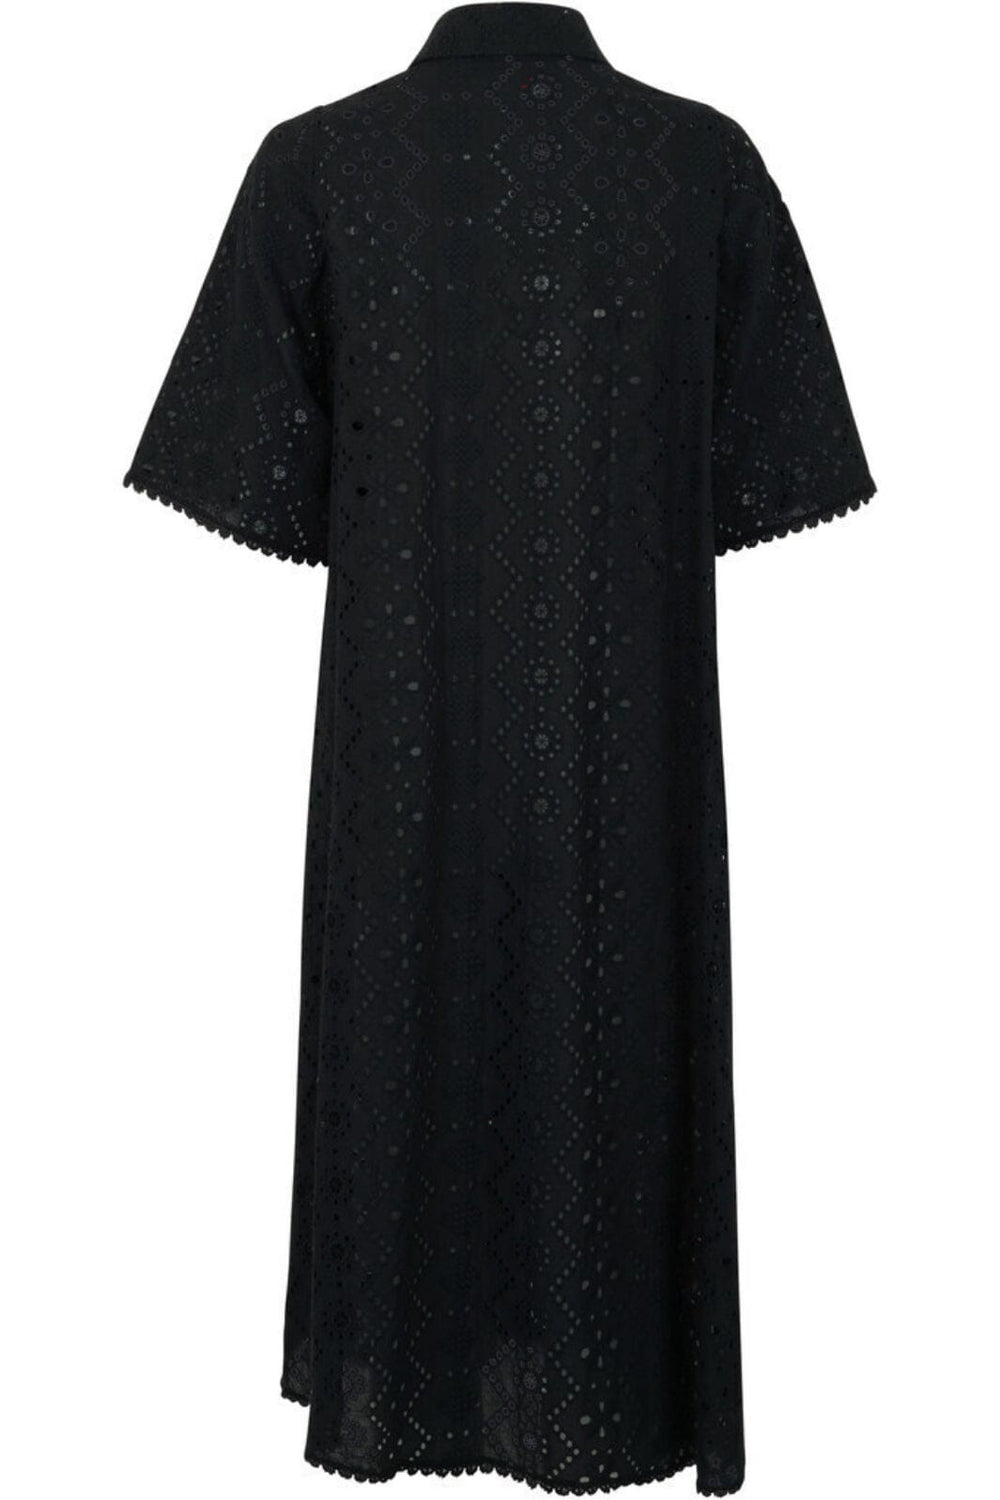 Forudbestilling - Cras - Lacycras Dress - 9999 Black Kjoler 